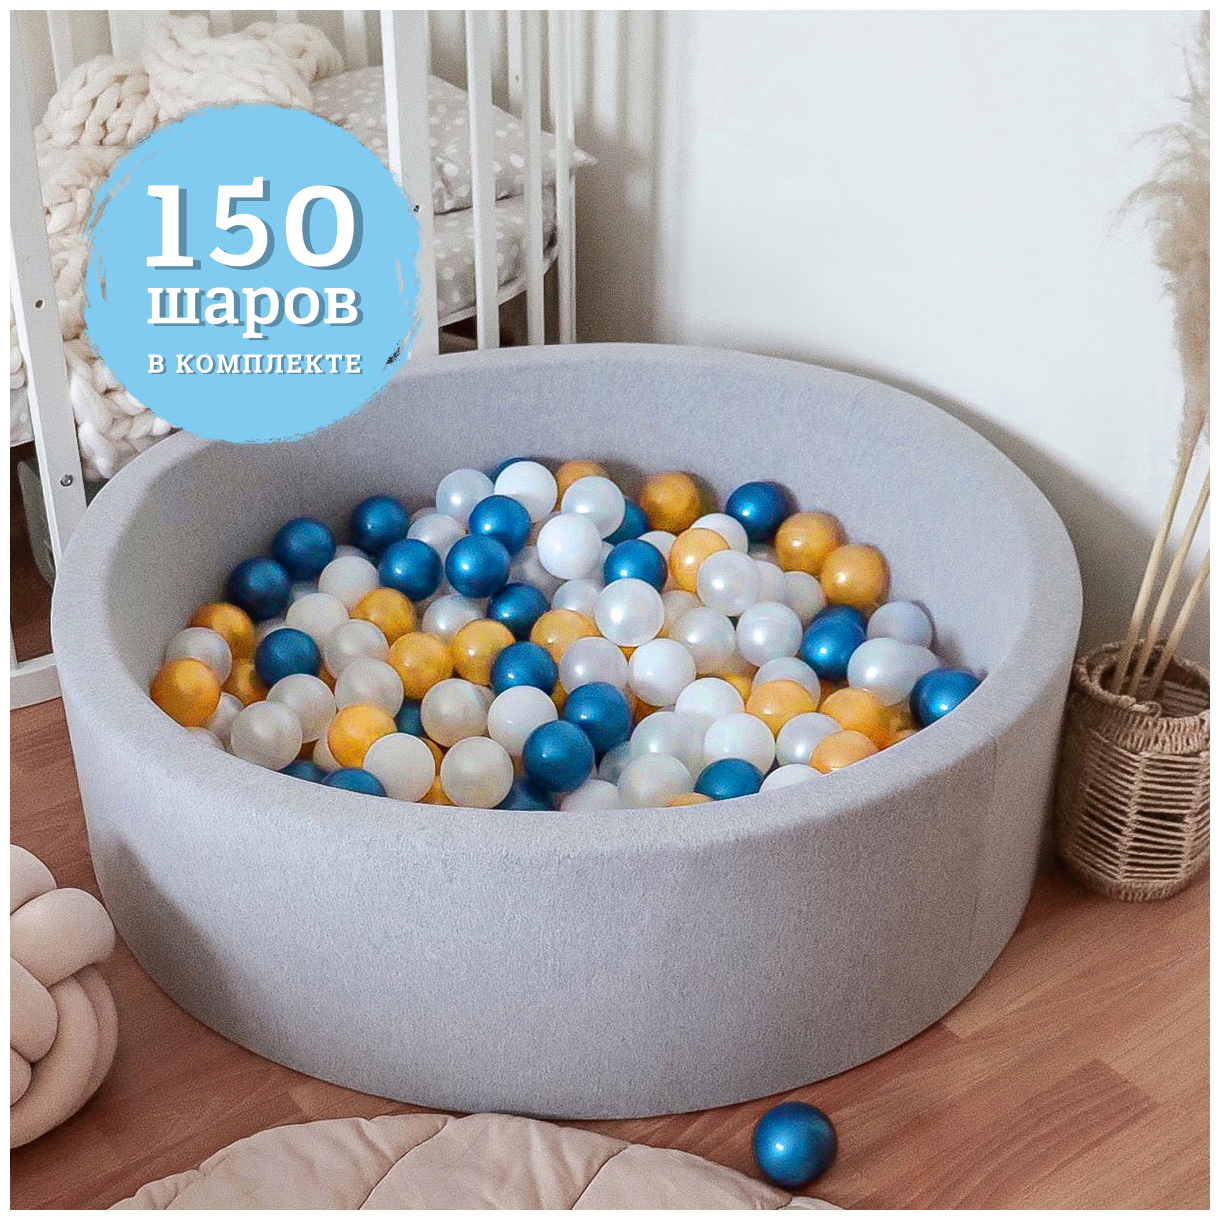 Сухой бассейн с шариками "Синий металлик" Anlipool 70/30см + 150 шаров детский бассейн игрушки для детей подарок детям